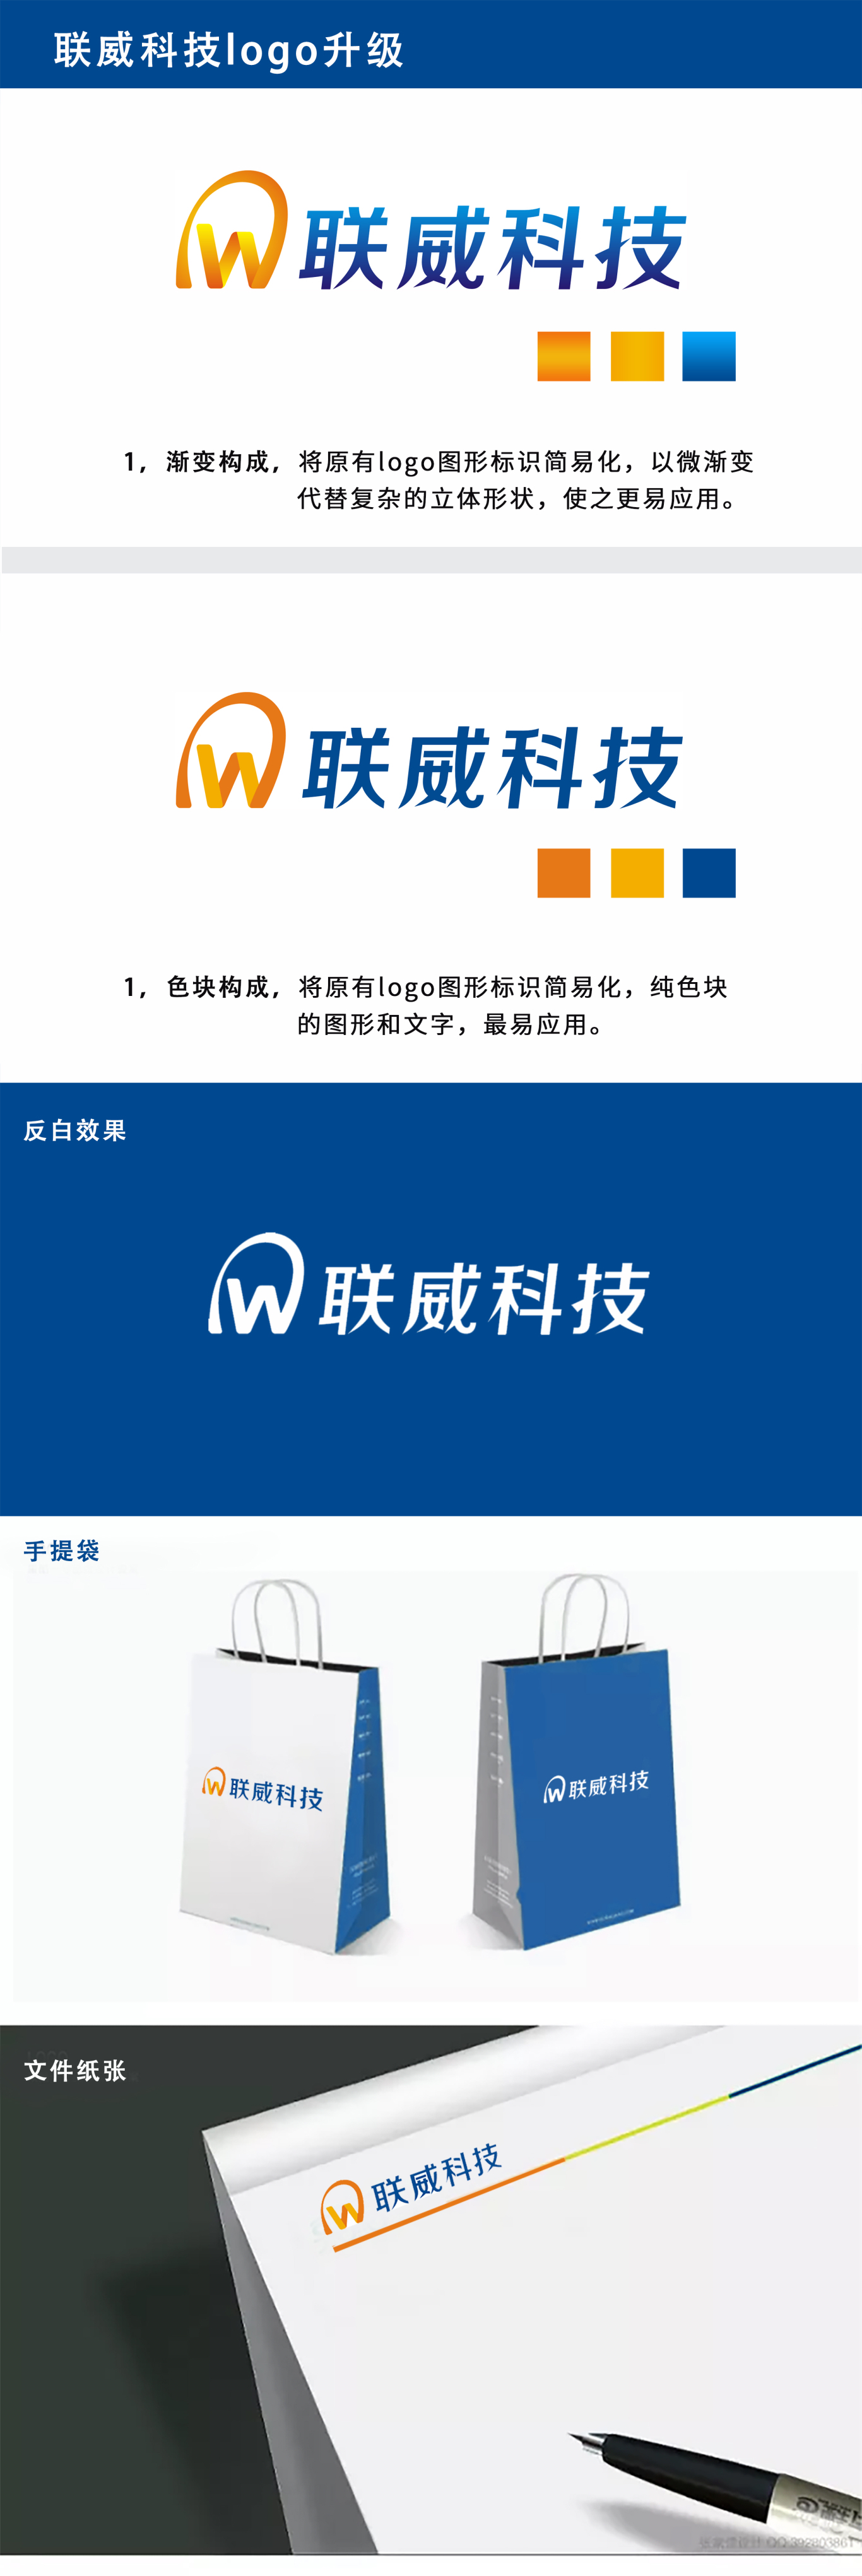 湖南新联威环境科技有限公司logo升级图0